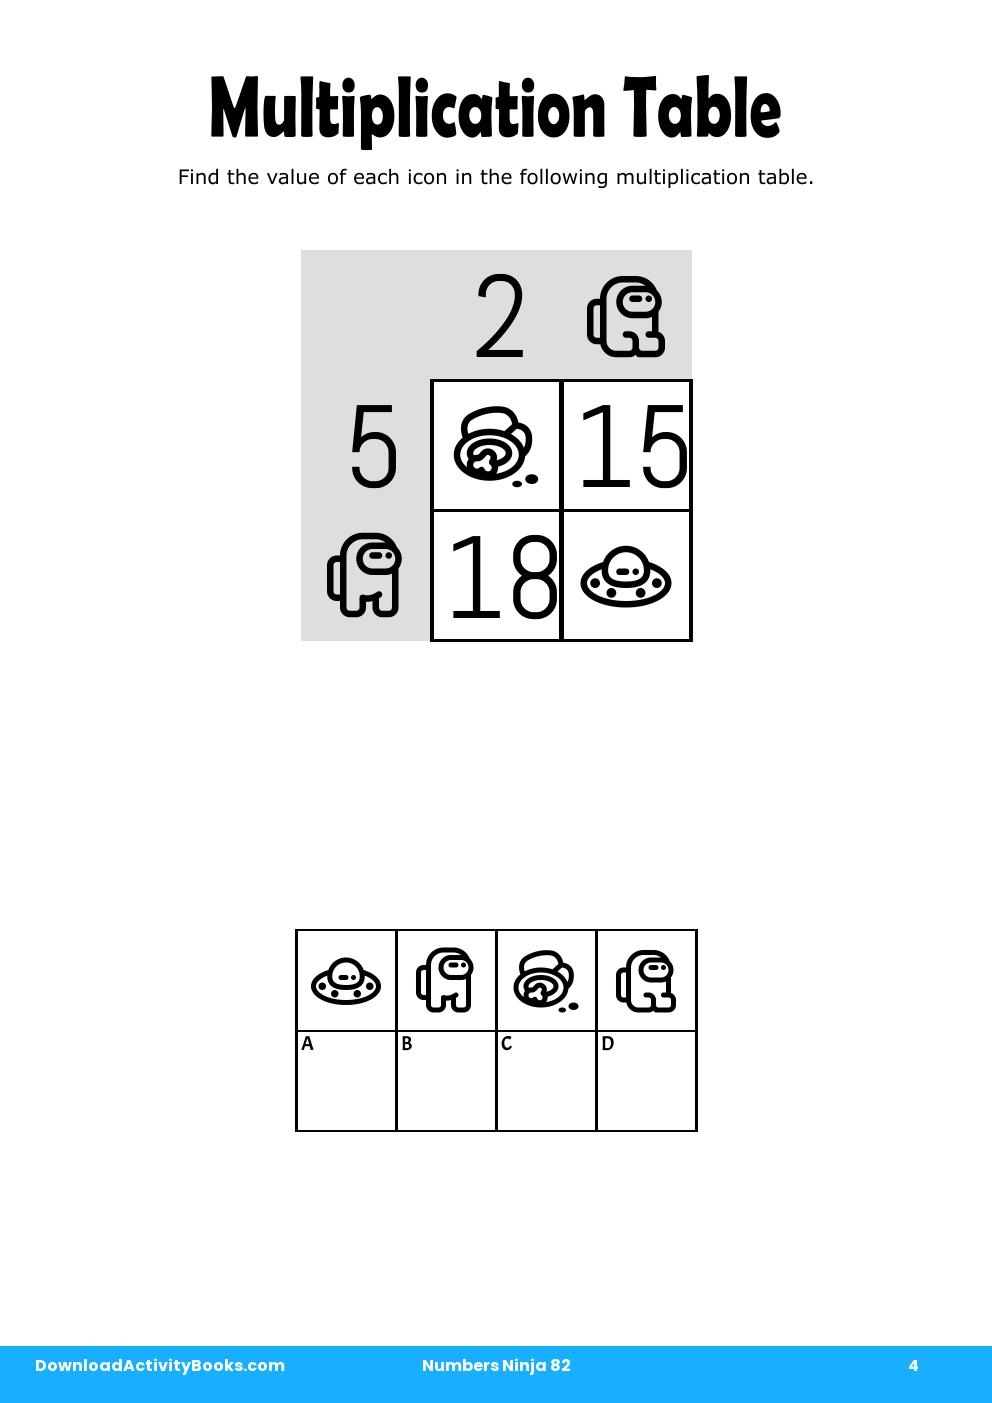 Multiplication Table in Numbers Ninja 82